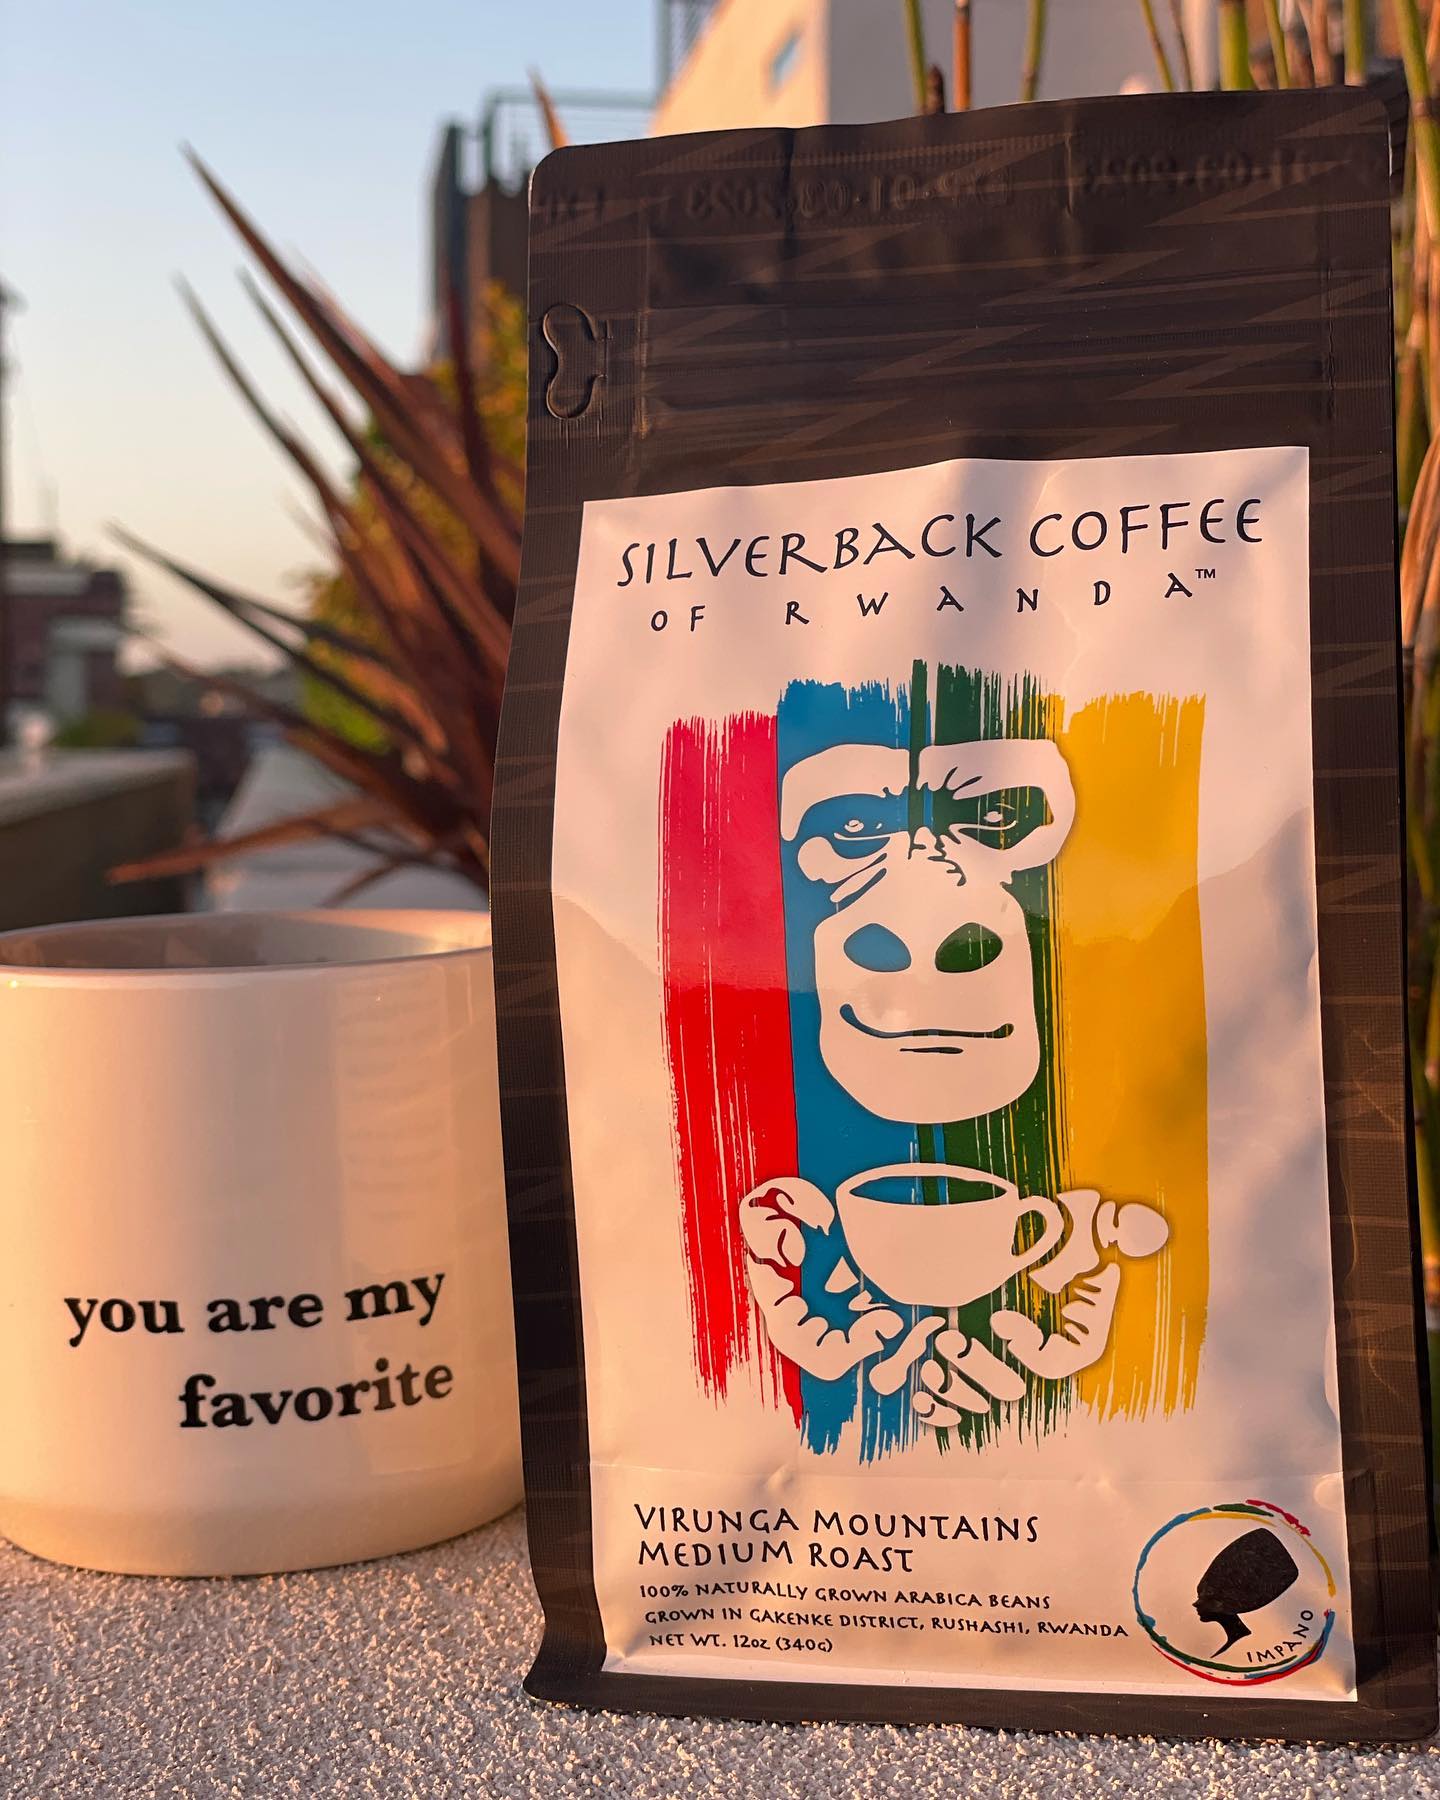 Silverback Coffee of Rwanda